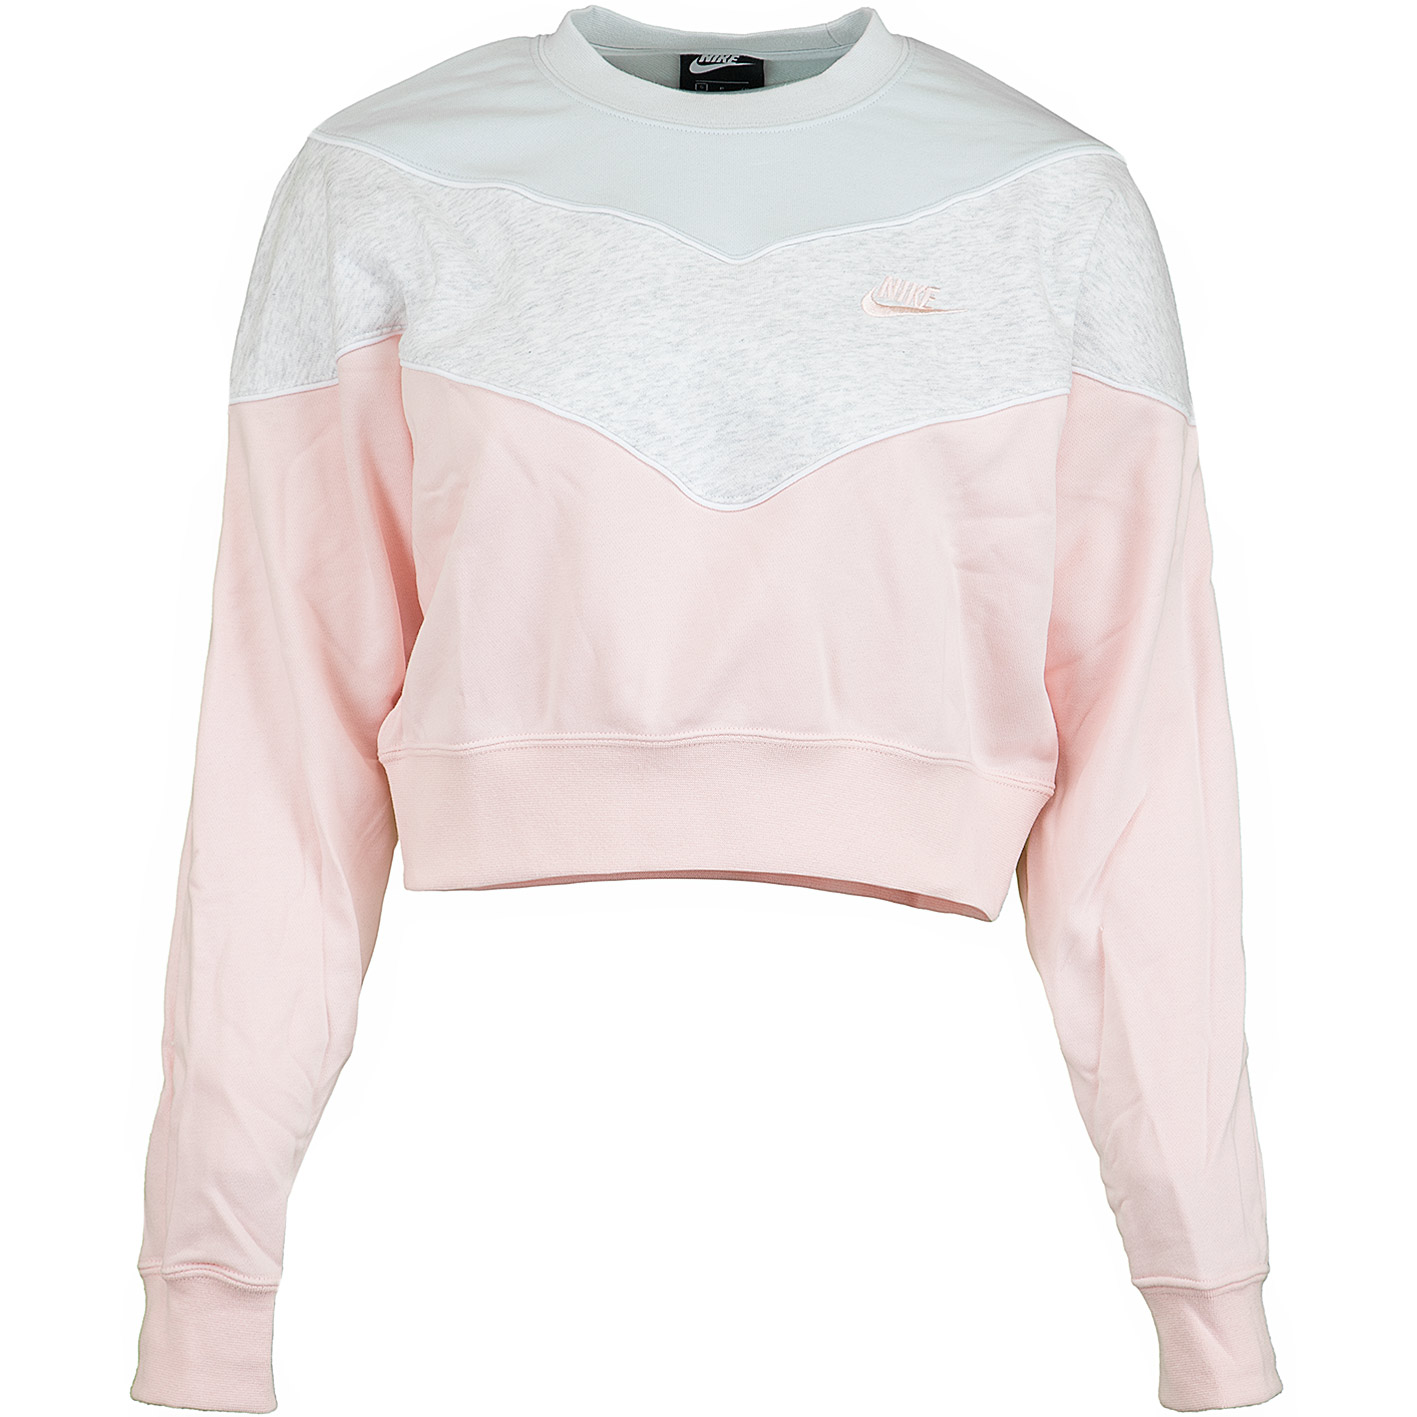 ☆ Nike Damen Sweatshirt Heritage pink/grau/blau - hier bestellen!